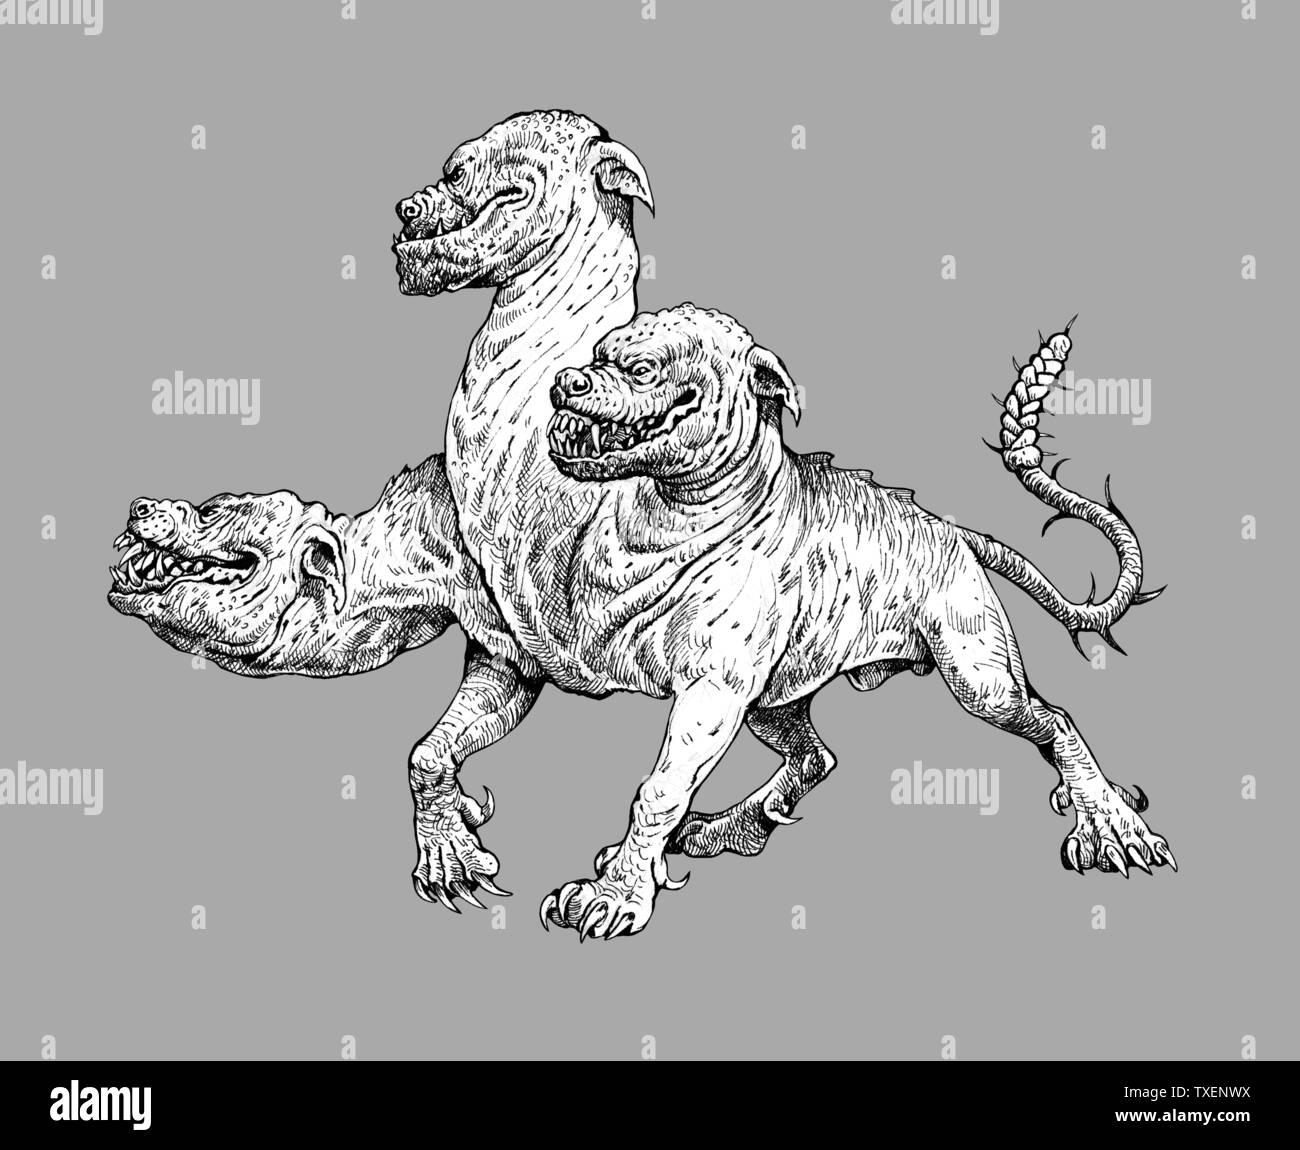 Multi headed dog Cerberus drawing. Hound of Hades. Greek mythology illustration. Stock Photo